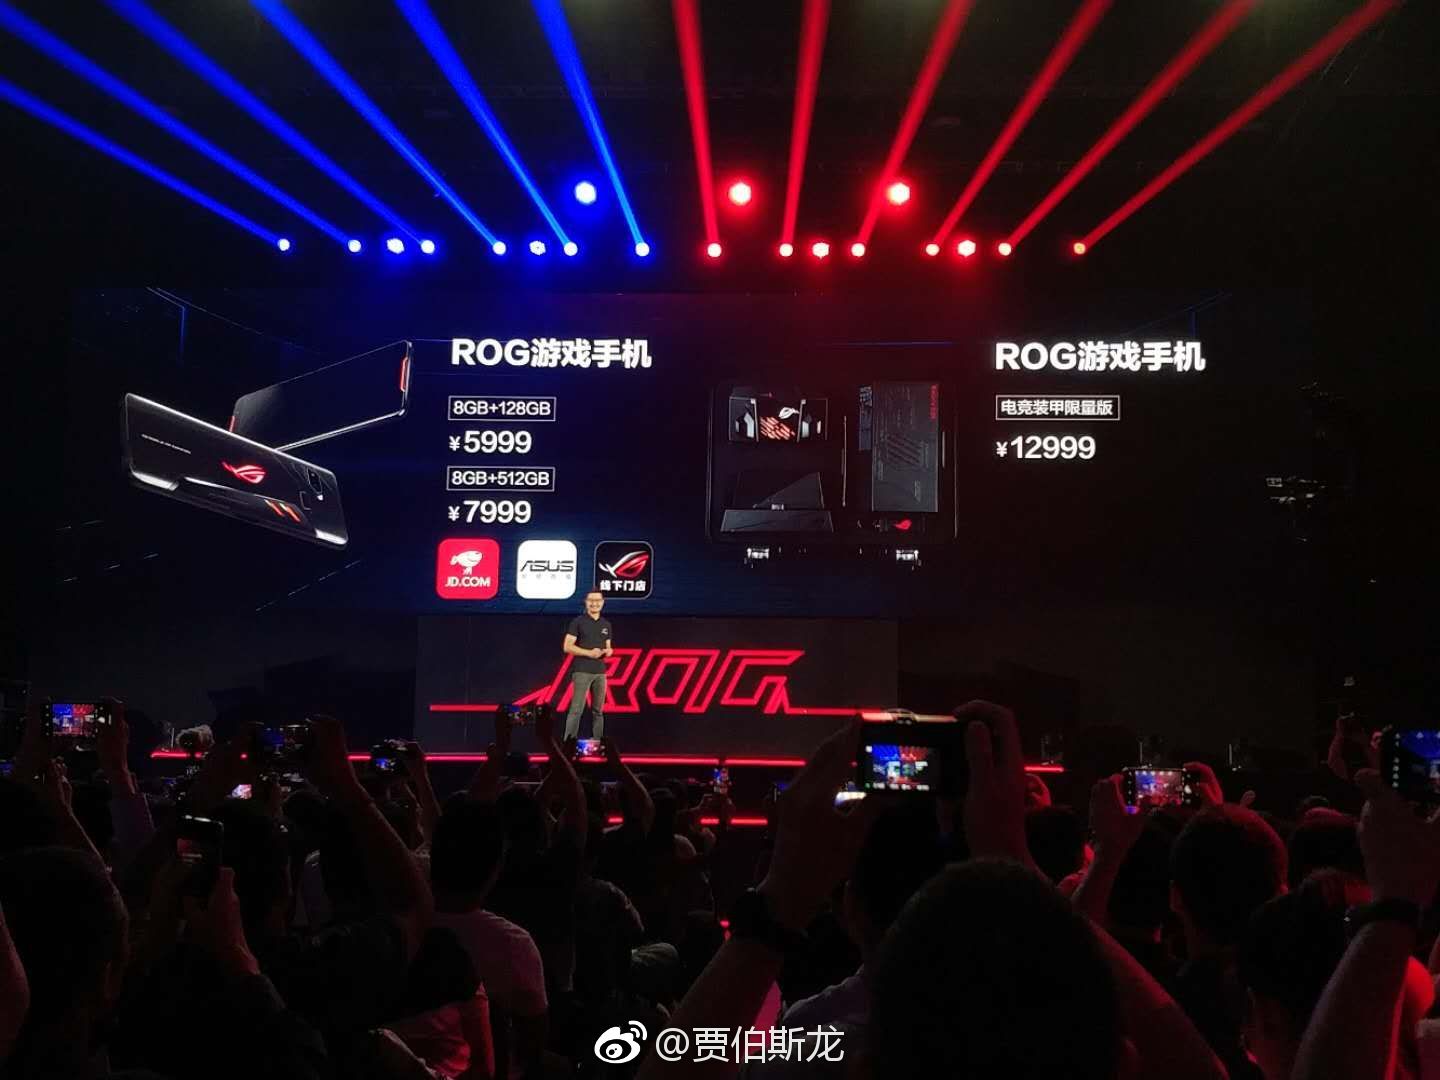 华硕公布ROG游戏手机国行价格 起价5999元、